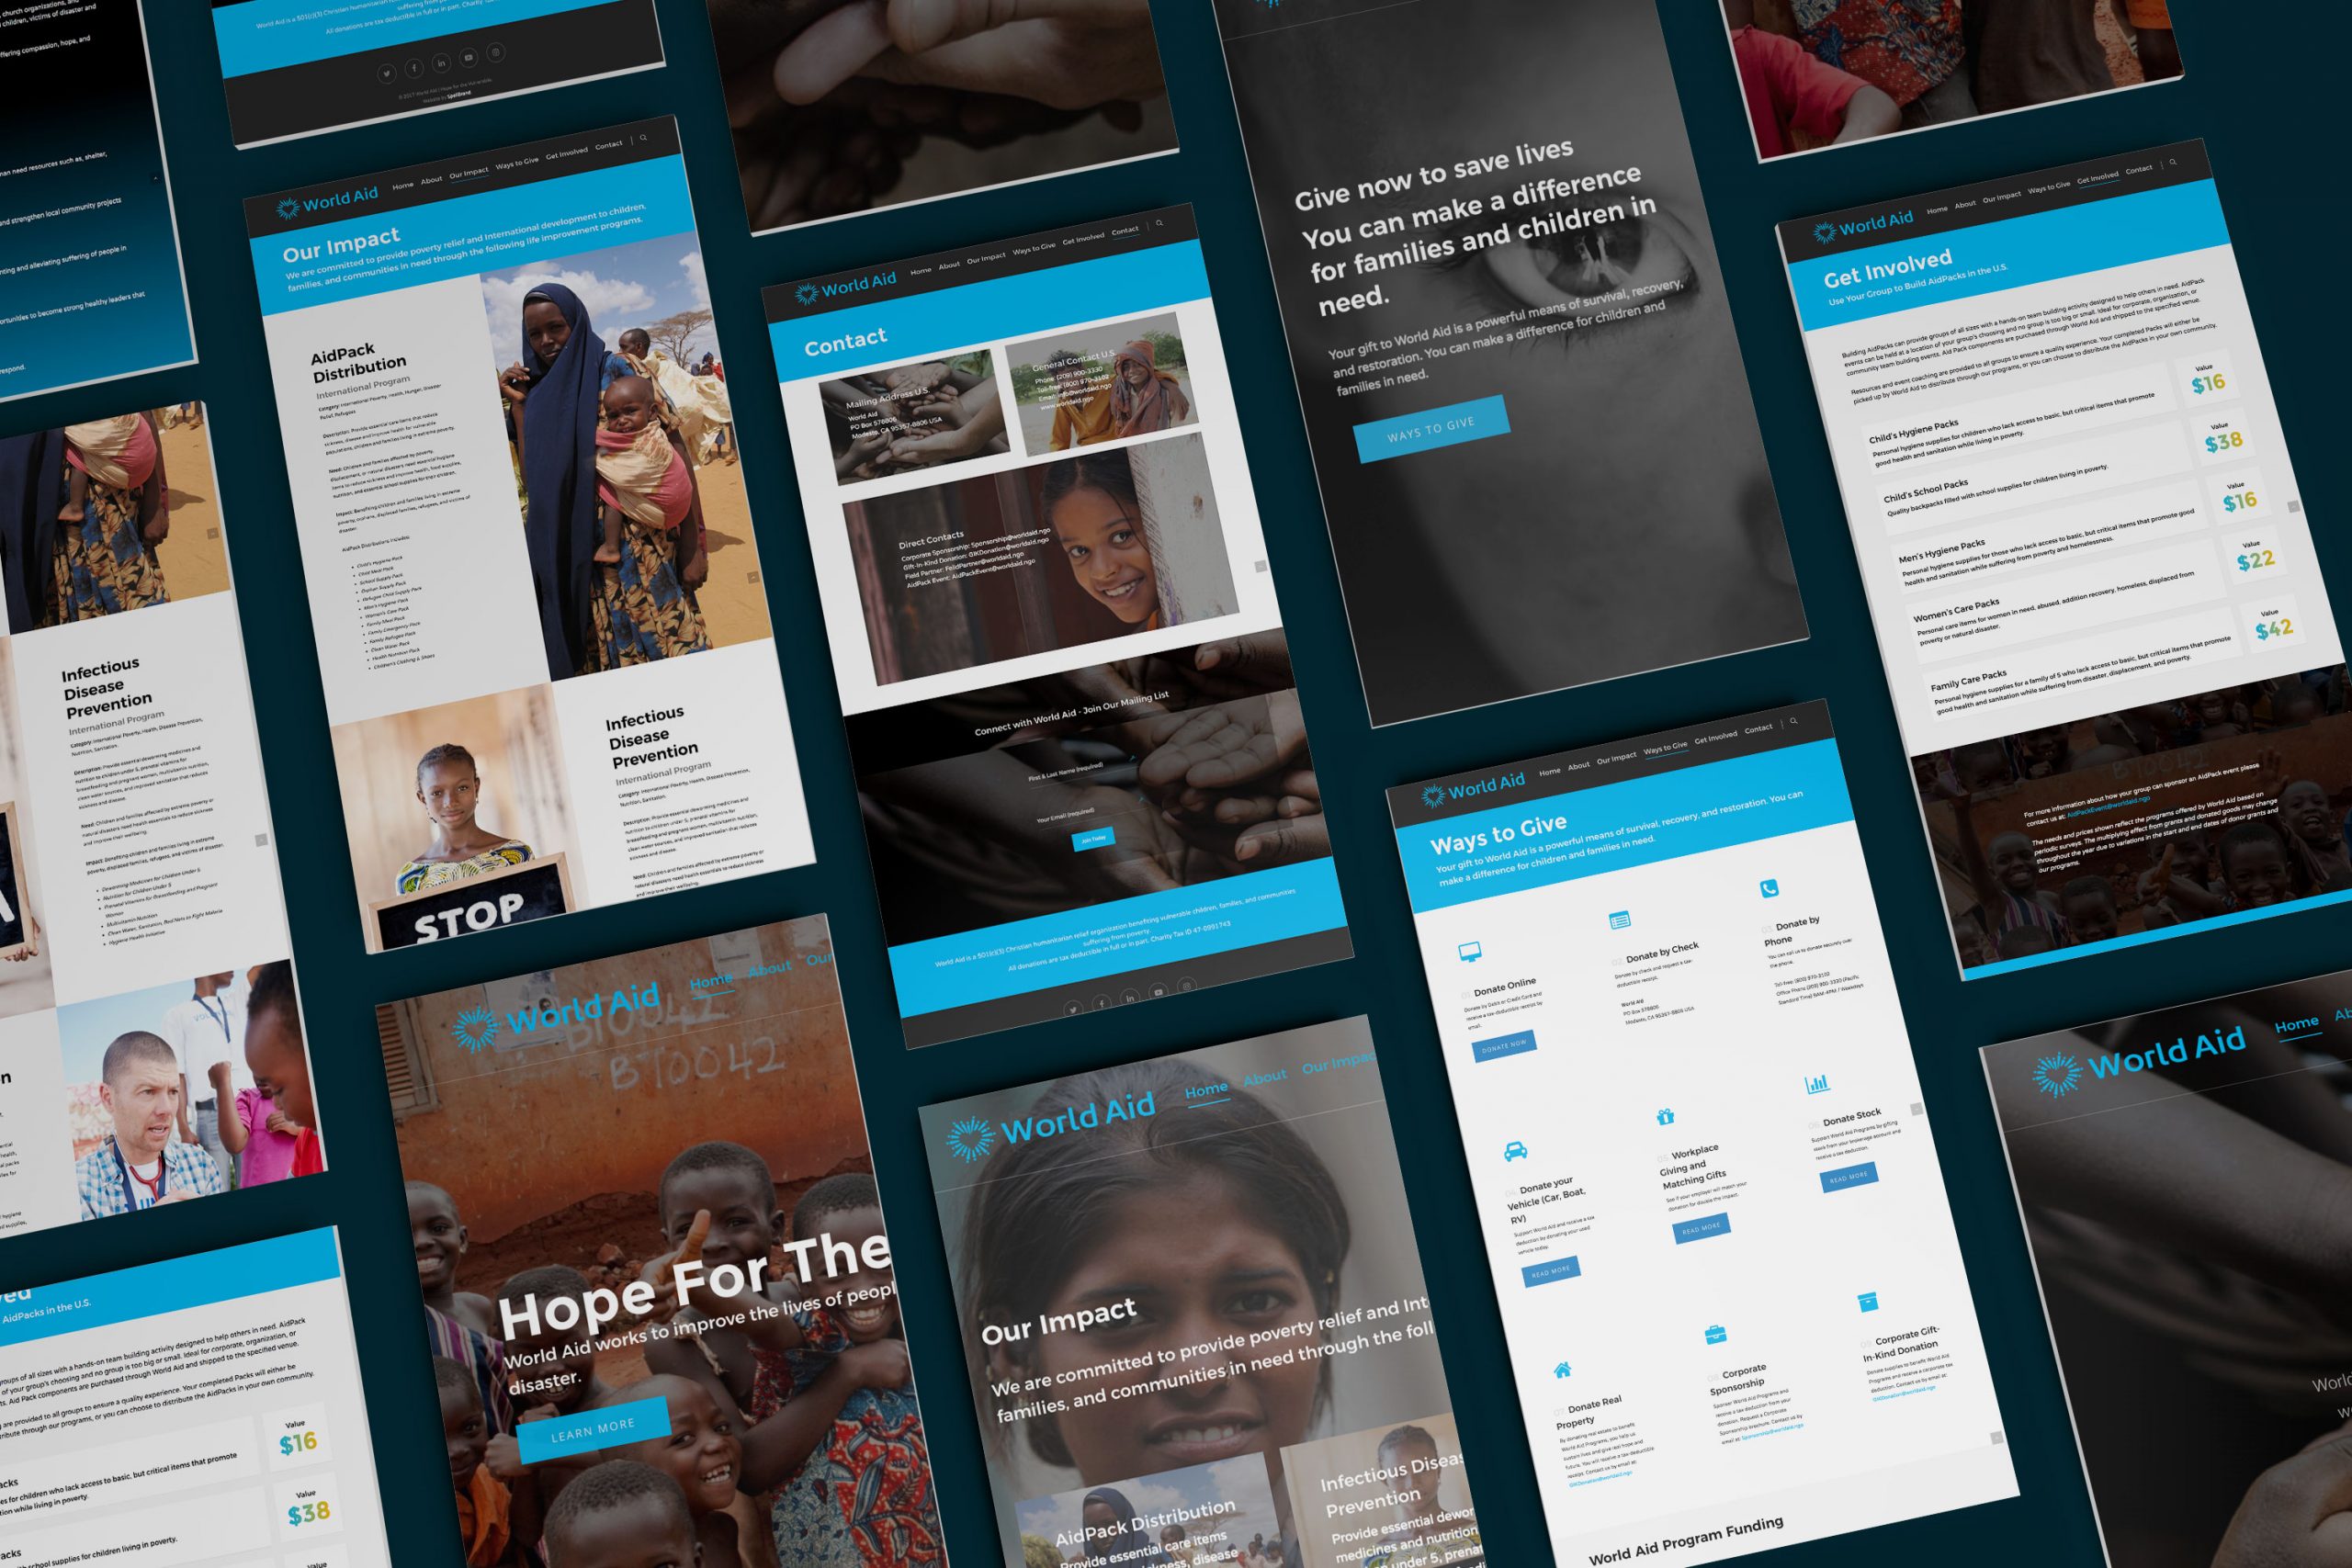 world aid website design